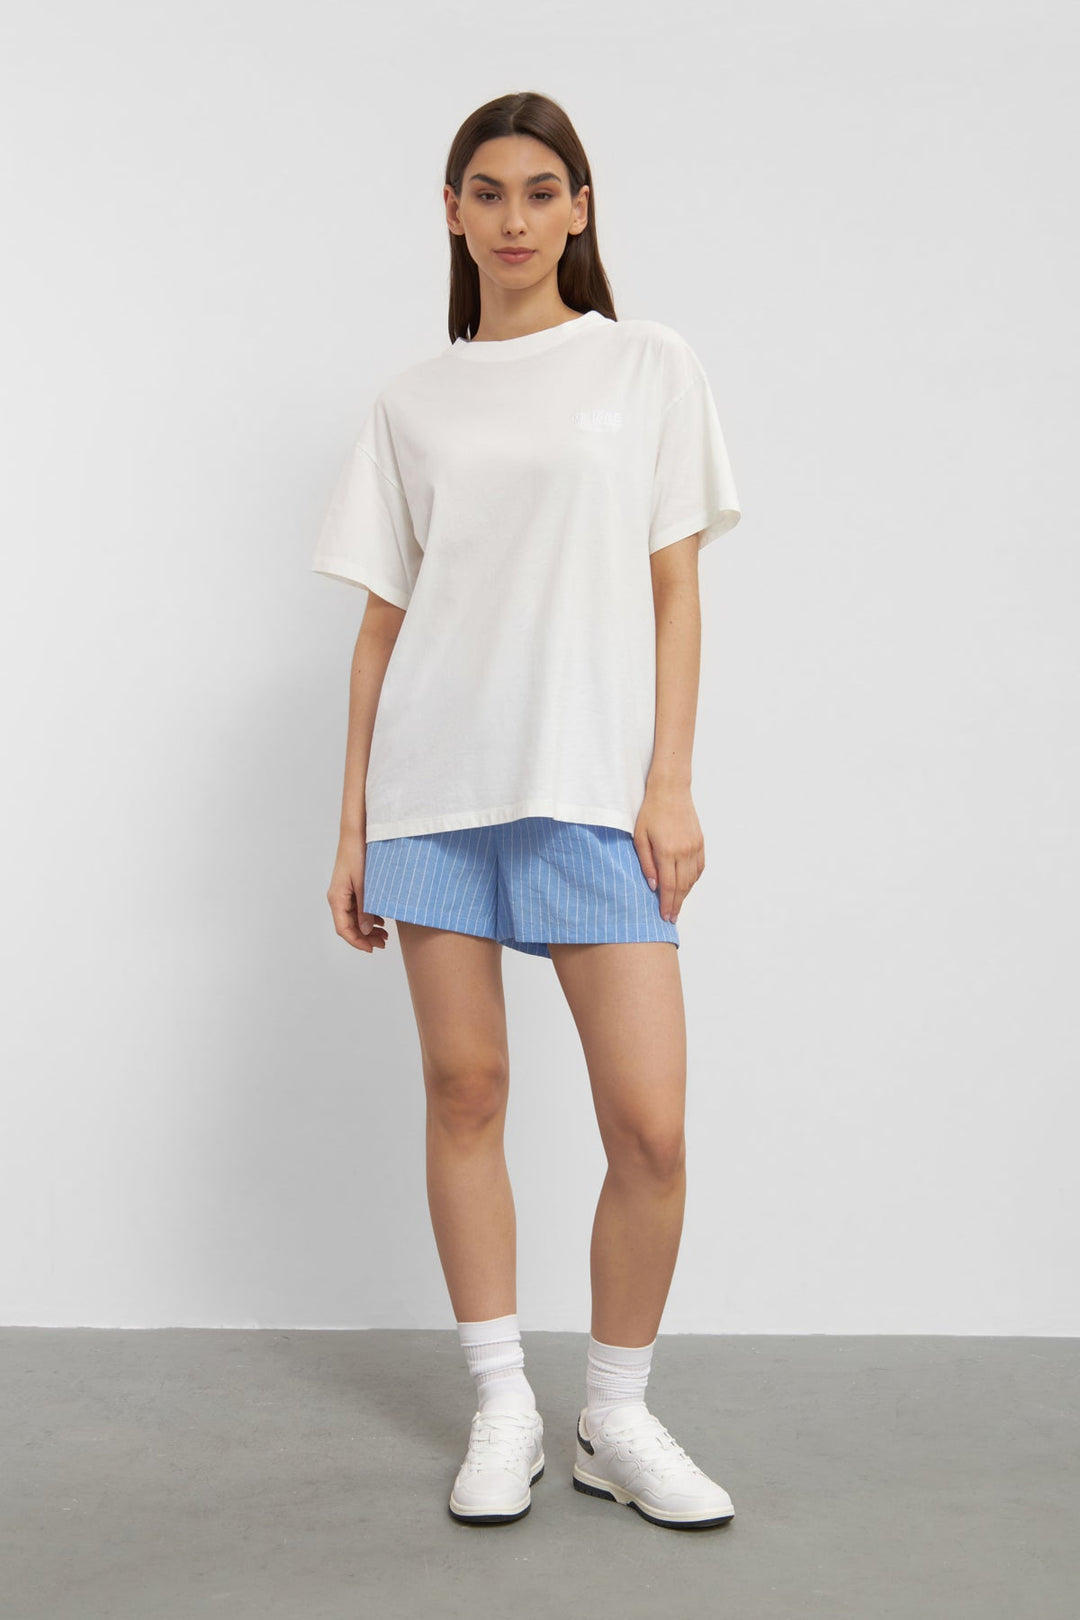 Maldon T-Shirt - Ivory